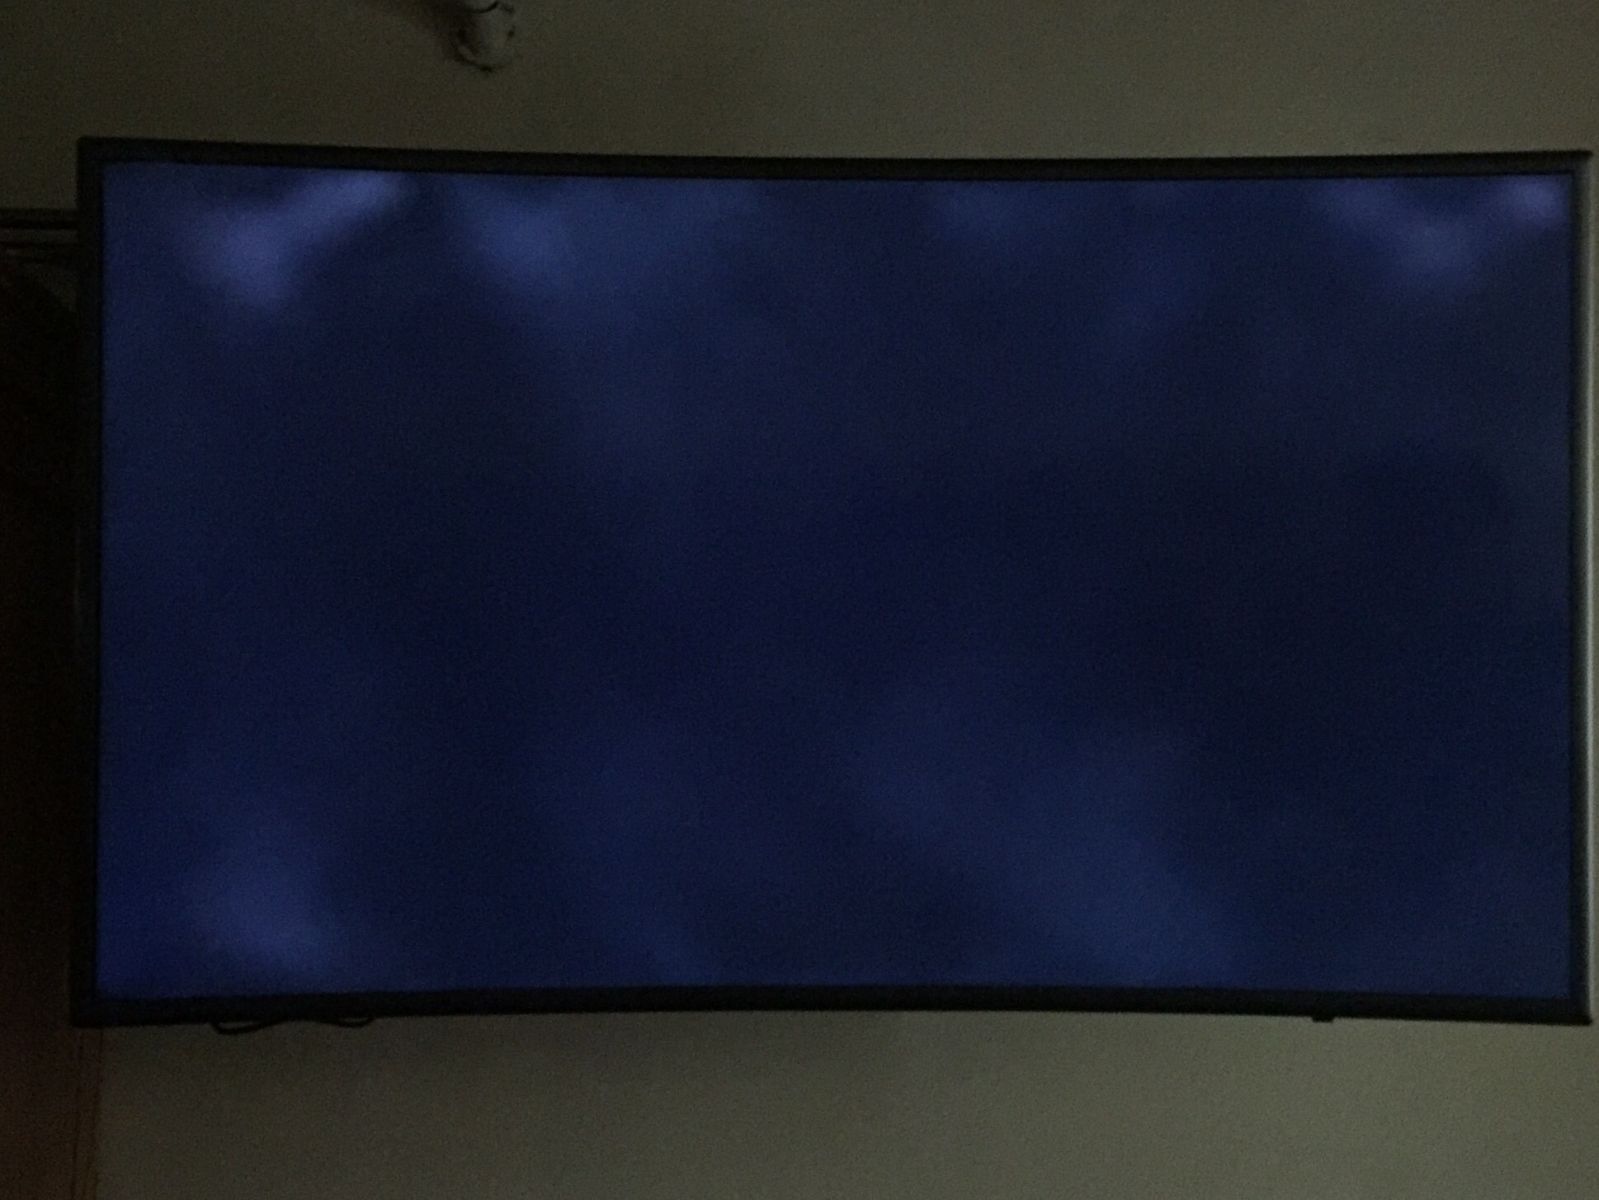 tivi sony bị đen màn hình